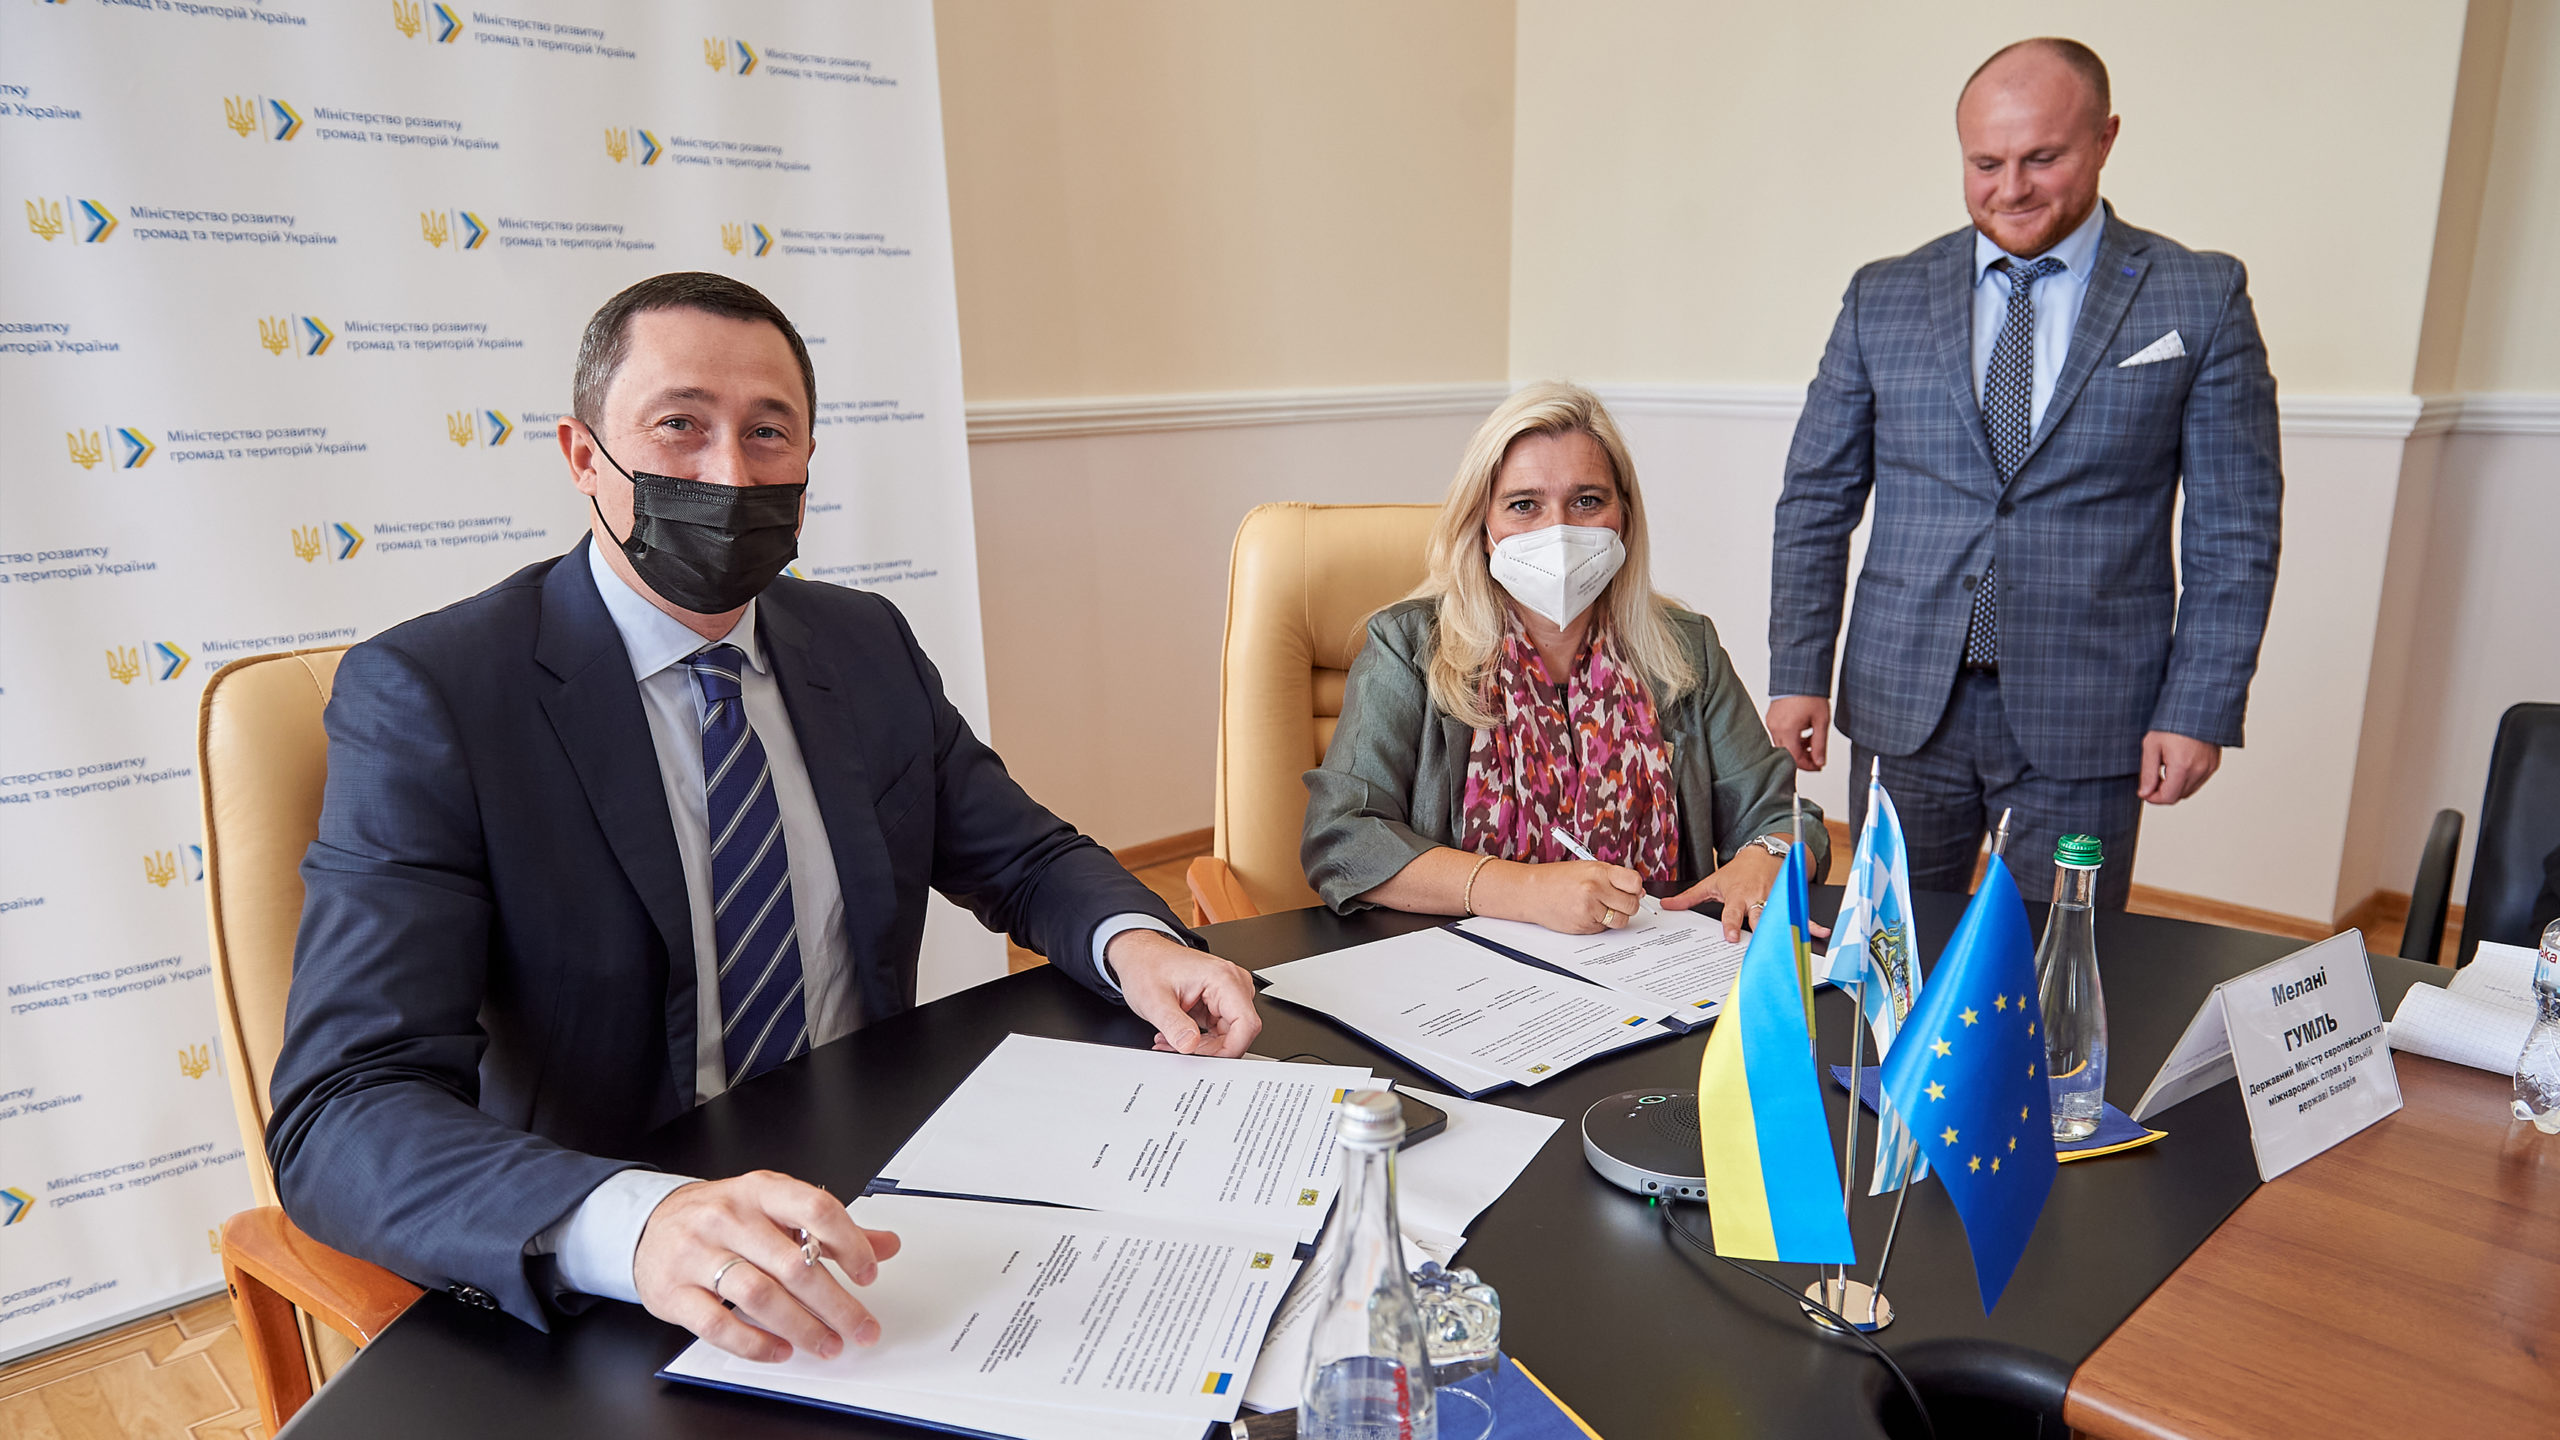 Nach der 12. Sitzung der Gemeinsamen Bayerisch-Ukrainischen Arbeitskommission unterzeichnen Europaministerin Melanie Huml, MdL (Mitte), und der Minister für die Entwicklung der Kommunen und Territorien der Ukraine, Oleksiy M. Chernyshov (links), eine Gemeinsame Erklärung.